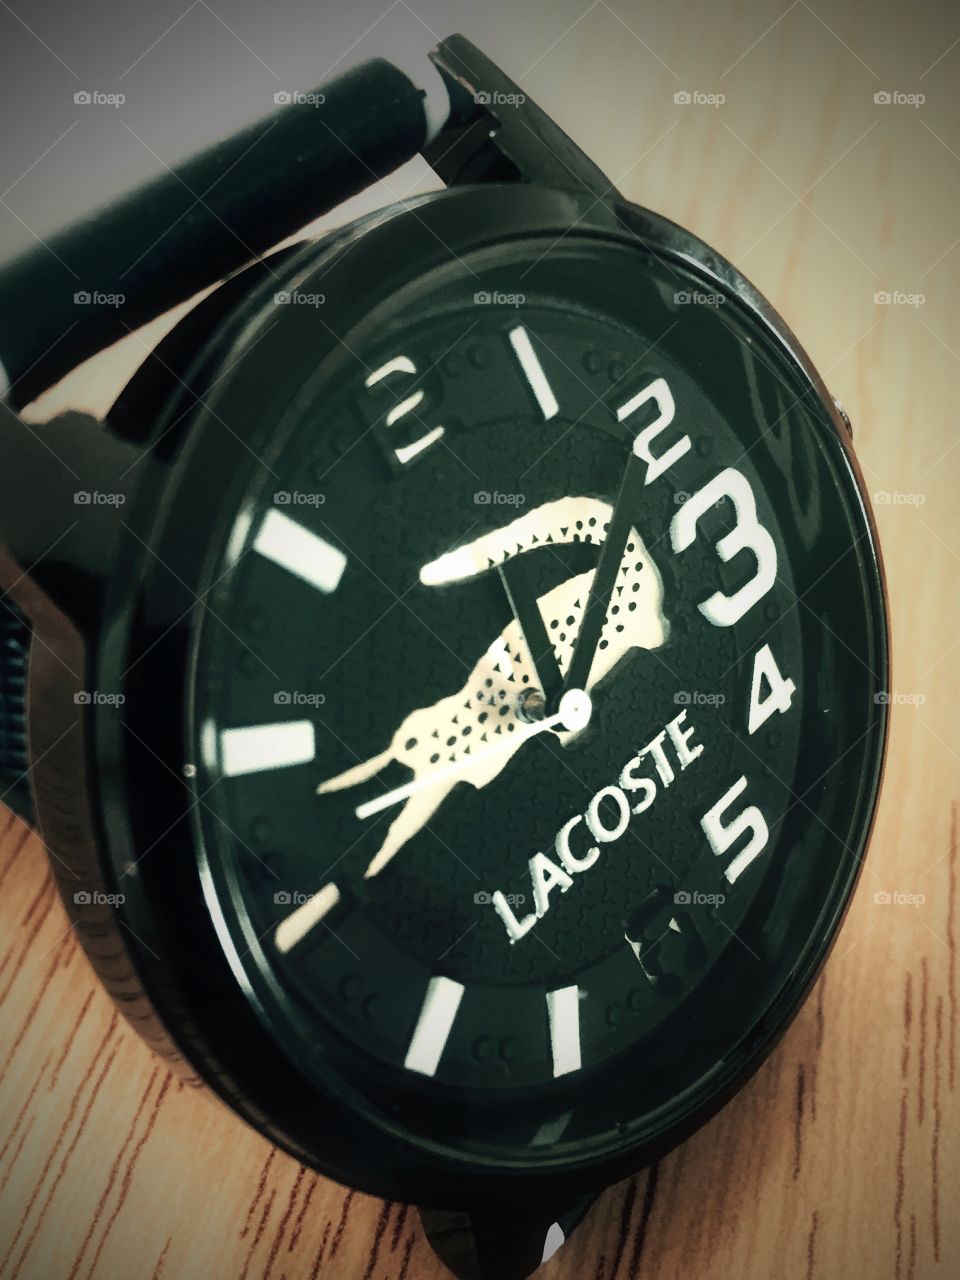 LACOST wrist watch